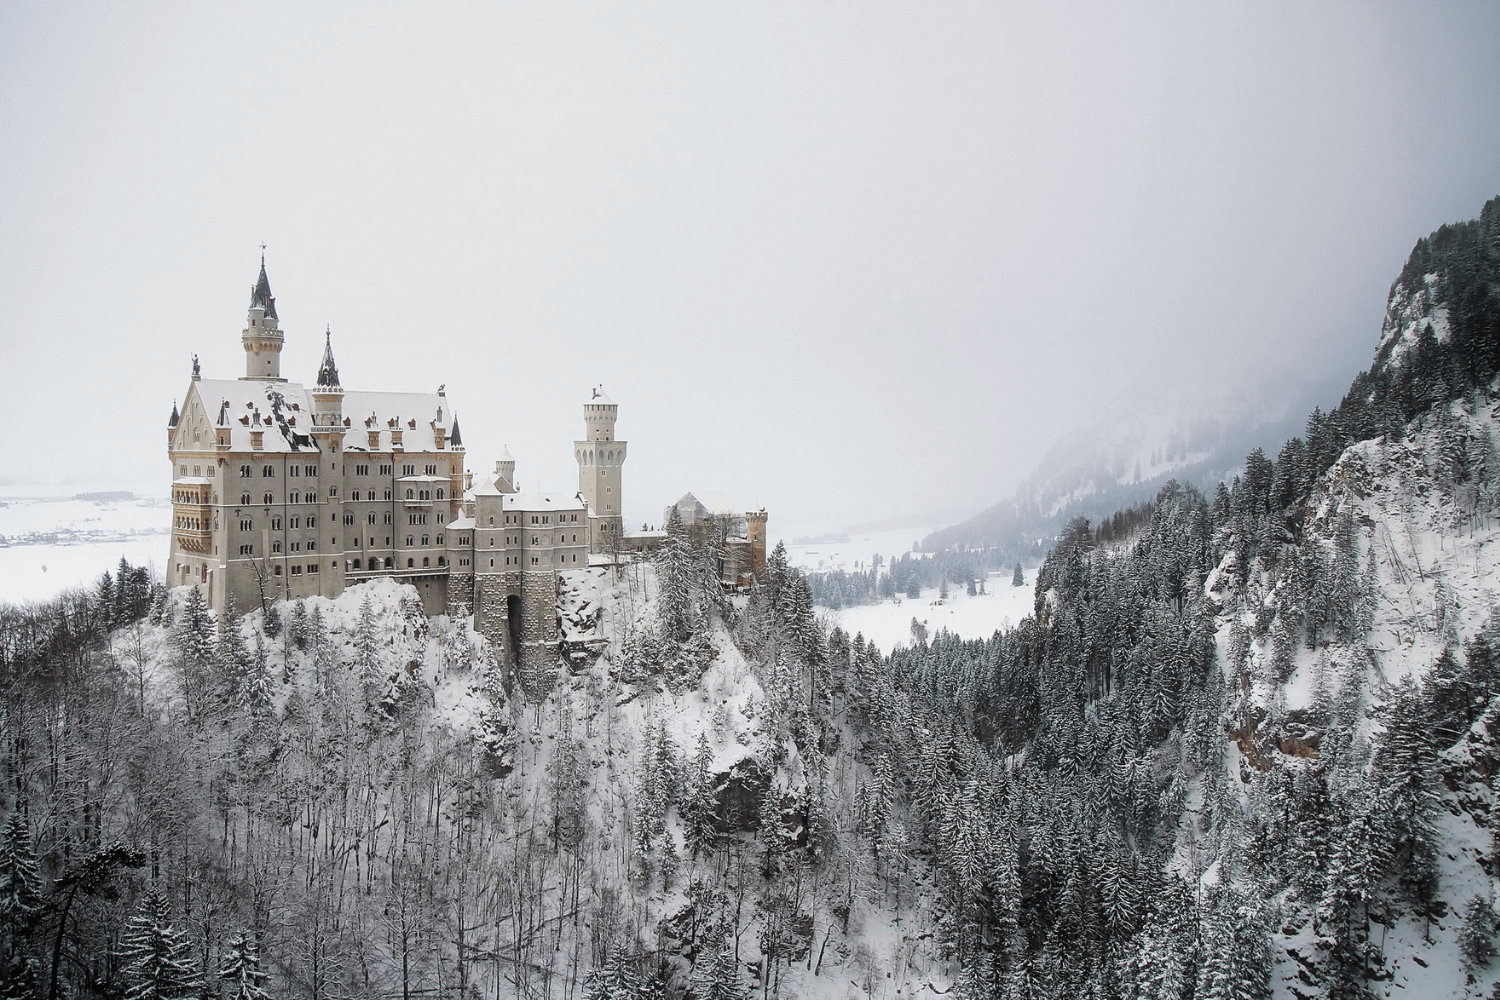 Castle Neuschwanstein Munich covered in snow